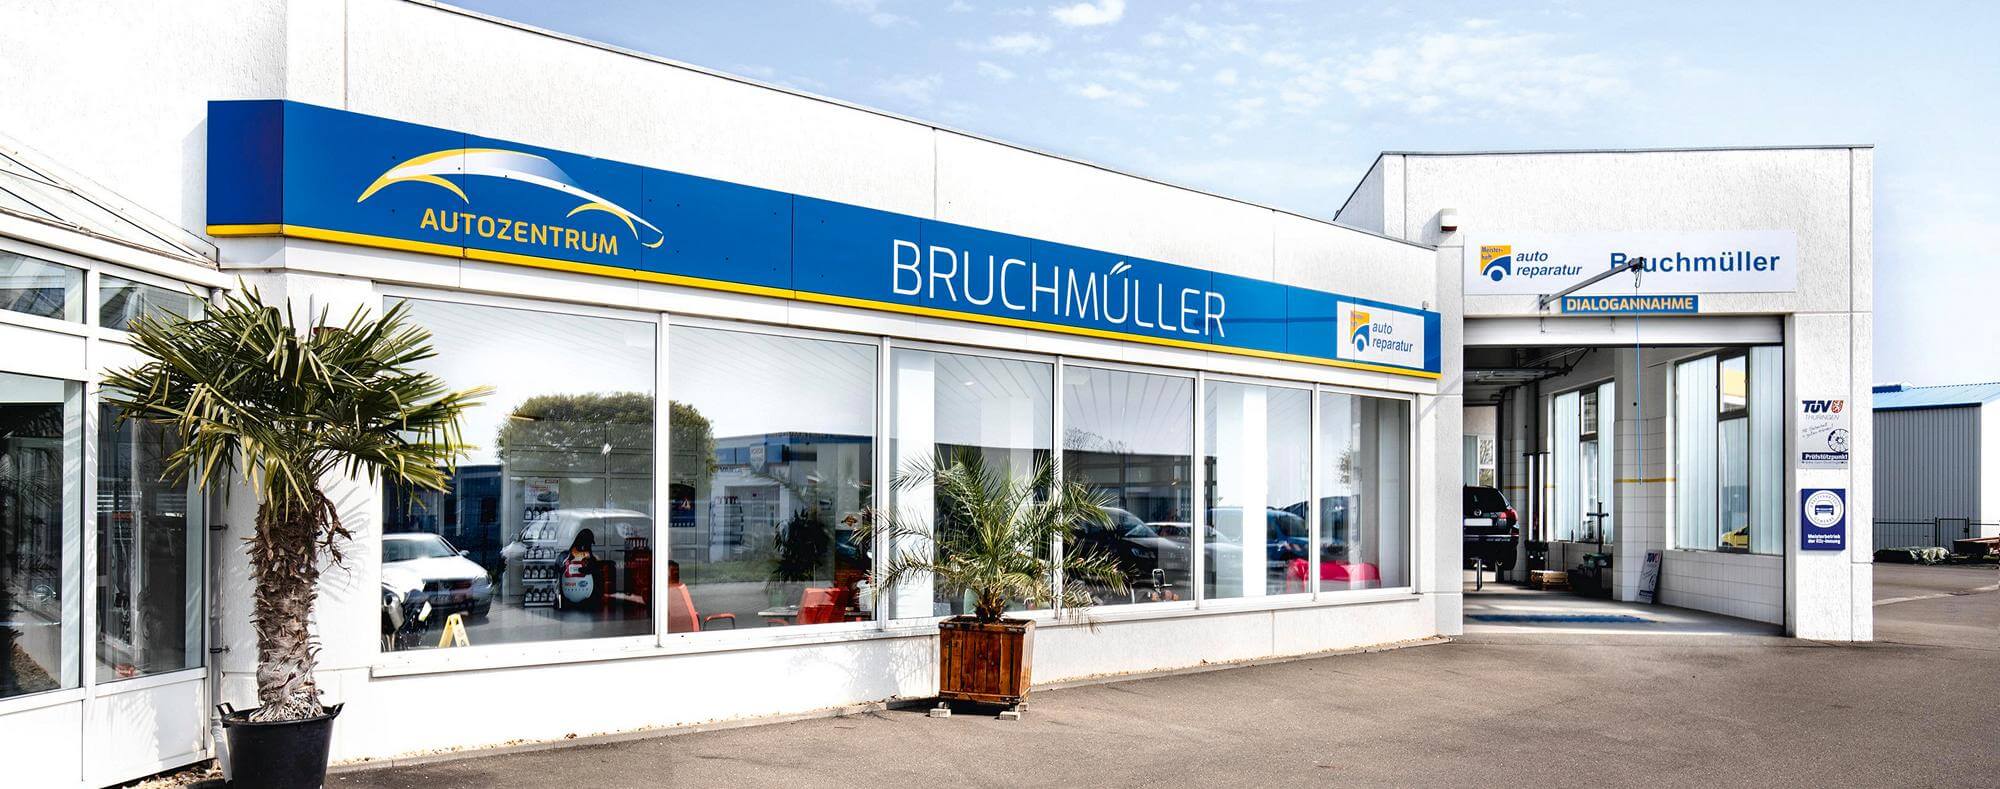 Autozentrum-Bruchmueller-Mehrmarkenwerkstatt